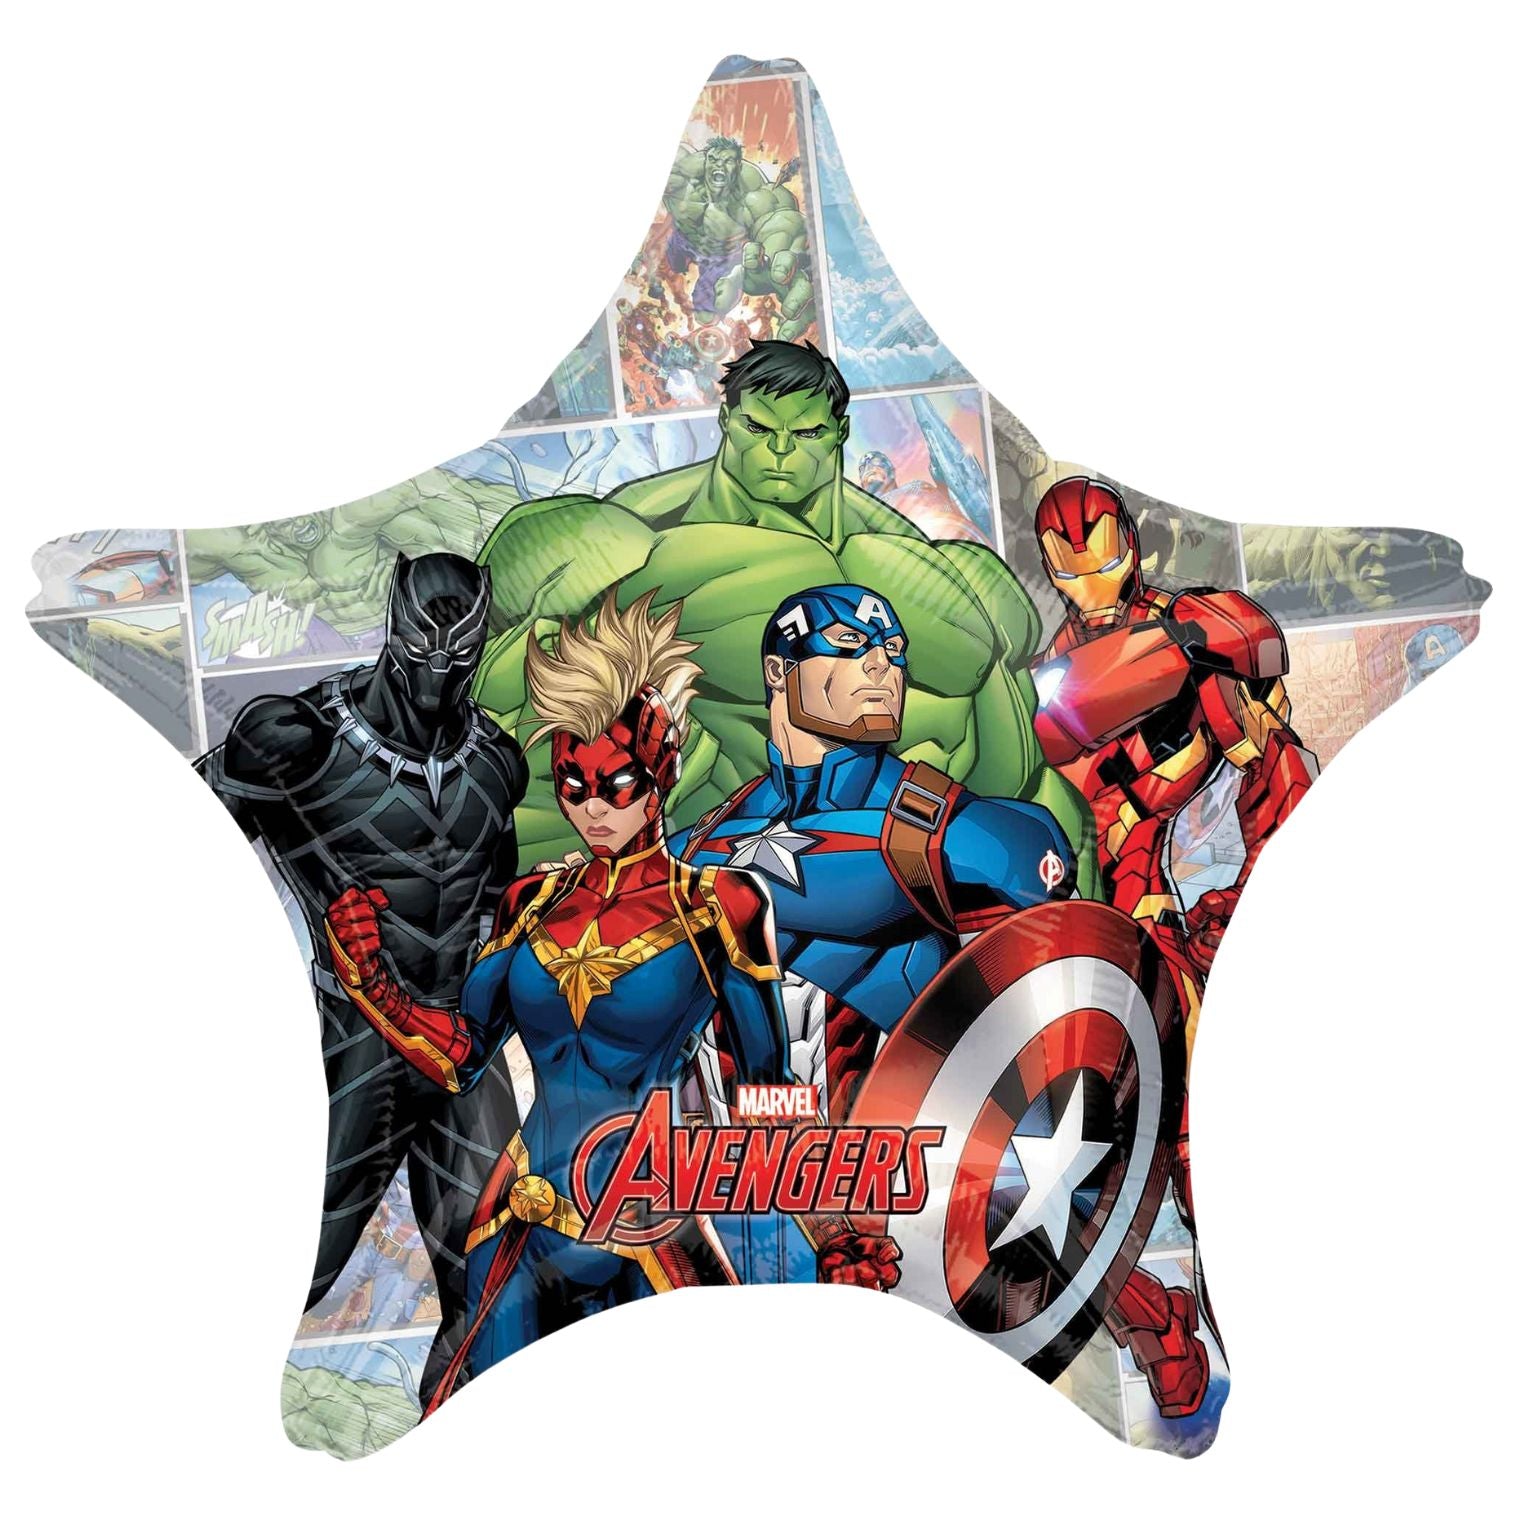 Anagram Avengers Powers Unite Jombo Star Foil Balloon